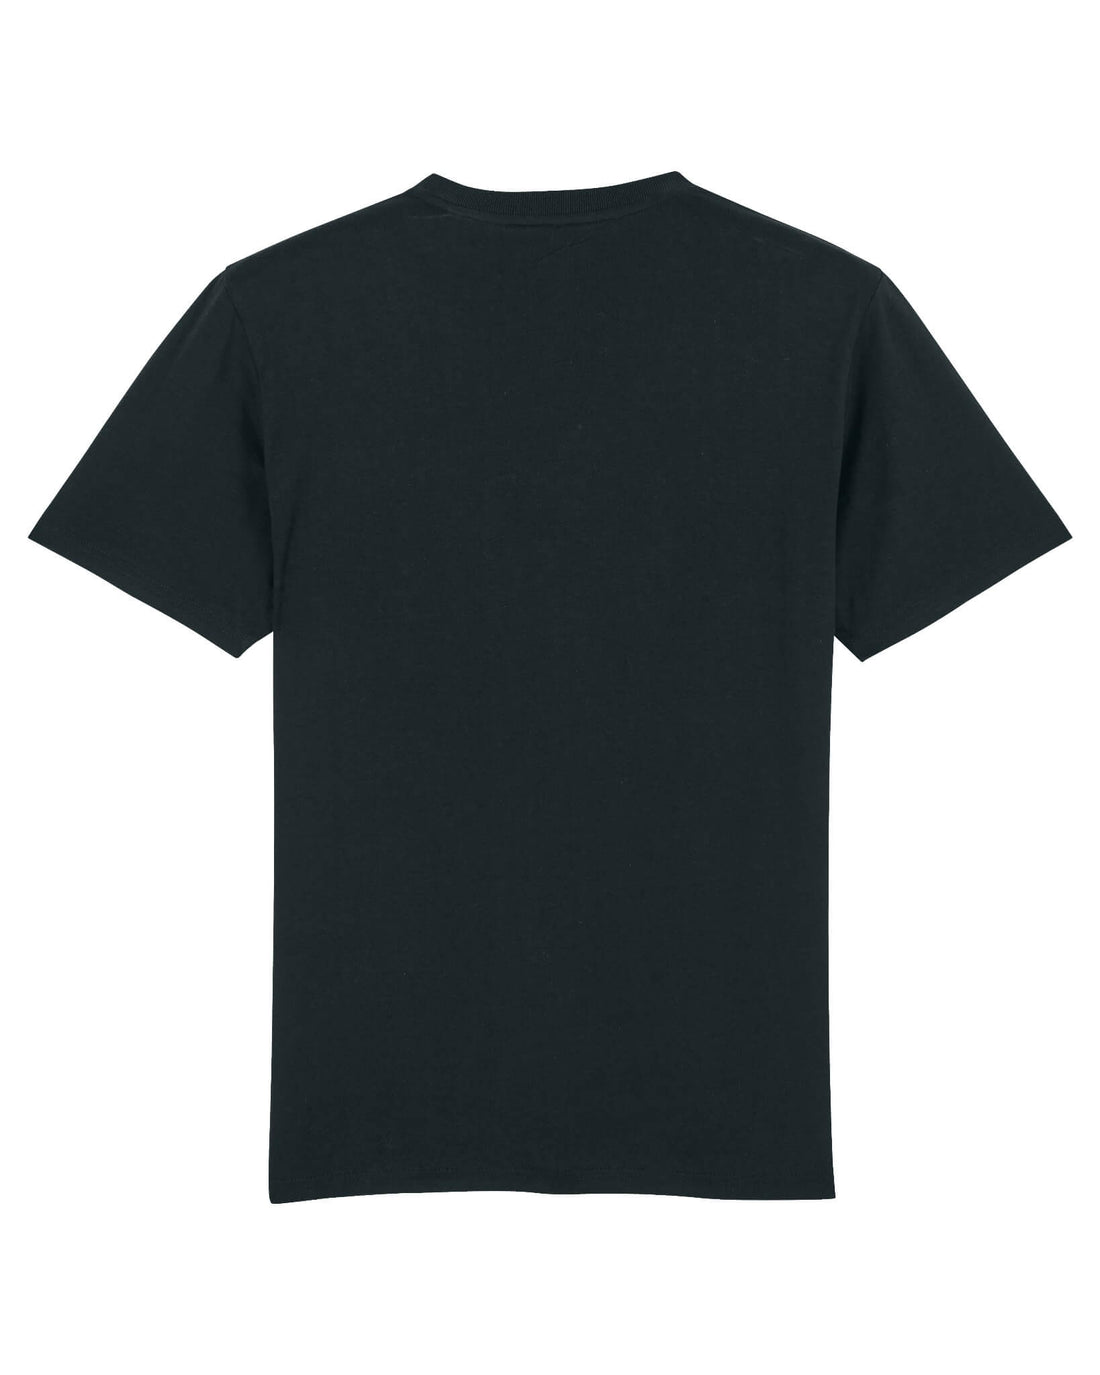 Black Skater T-Shirt, Skate Ramp Back Print